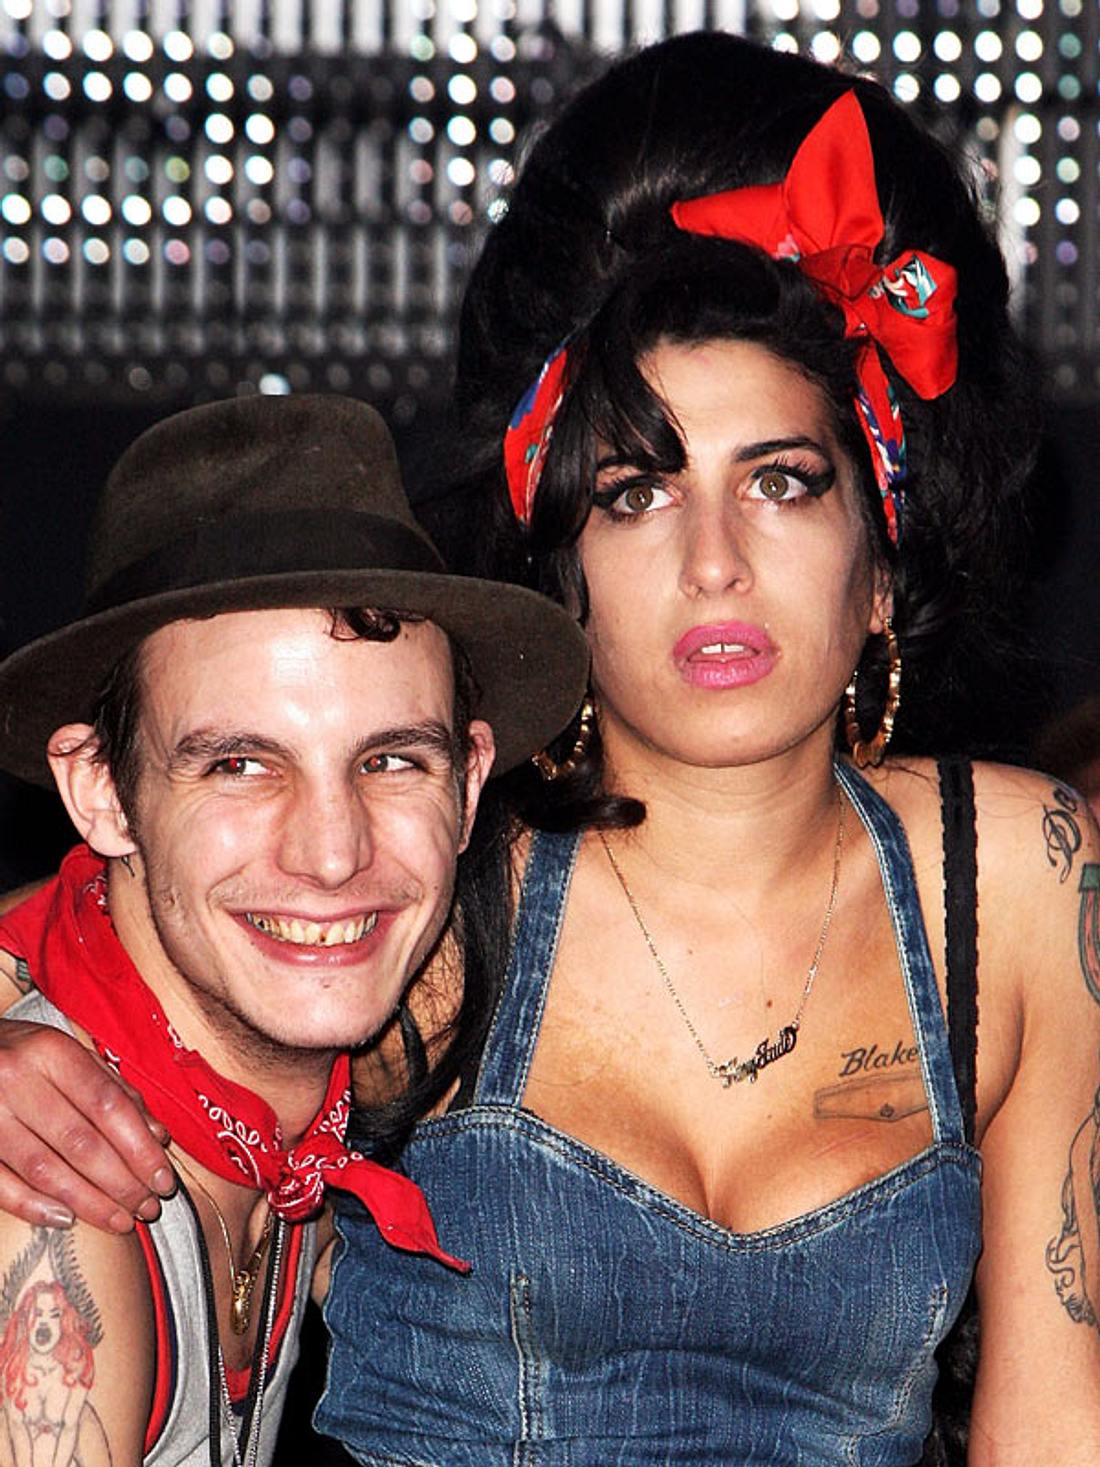 Amy Winehouse - Ihr Leben in BildernIm Mai 2007 heiratete Amy Winehouse Blake Fielder-Civil. Die Ehe hielt nur zwei Jahre. Viele machen Blake für Amys exzessiven Drogen- und Alkoholkonsum verantwortlich.